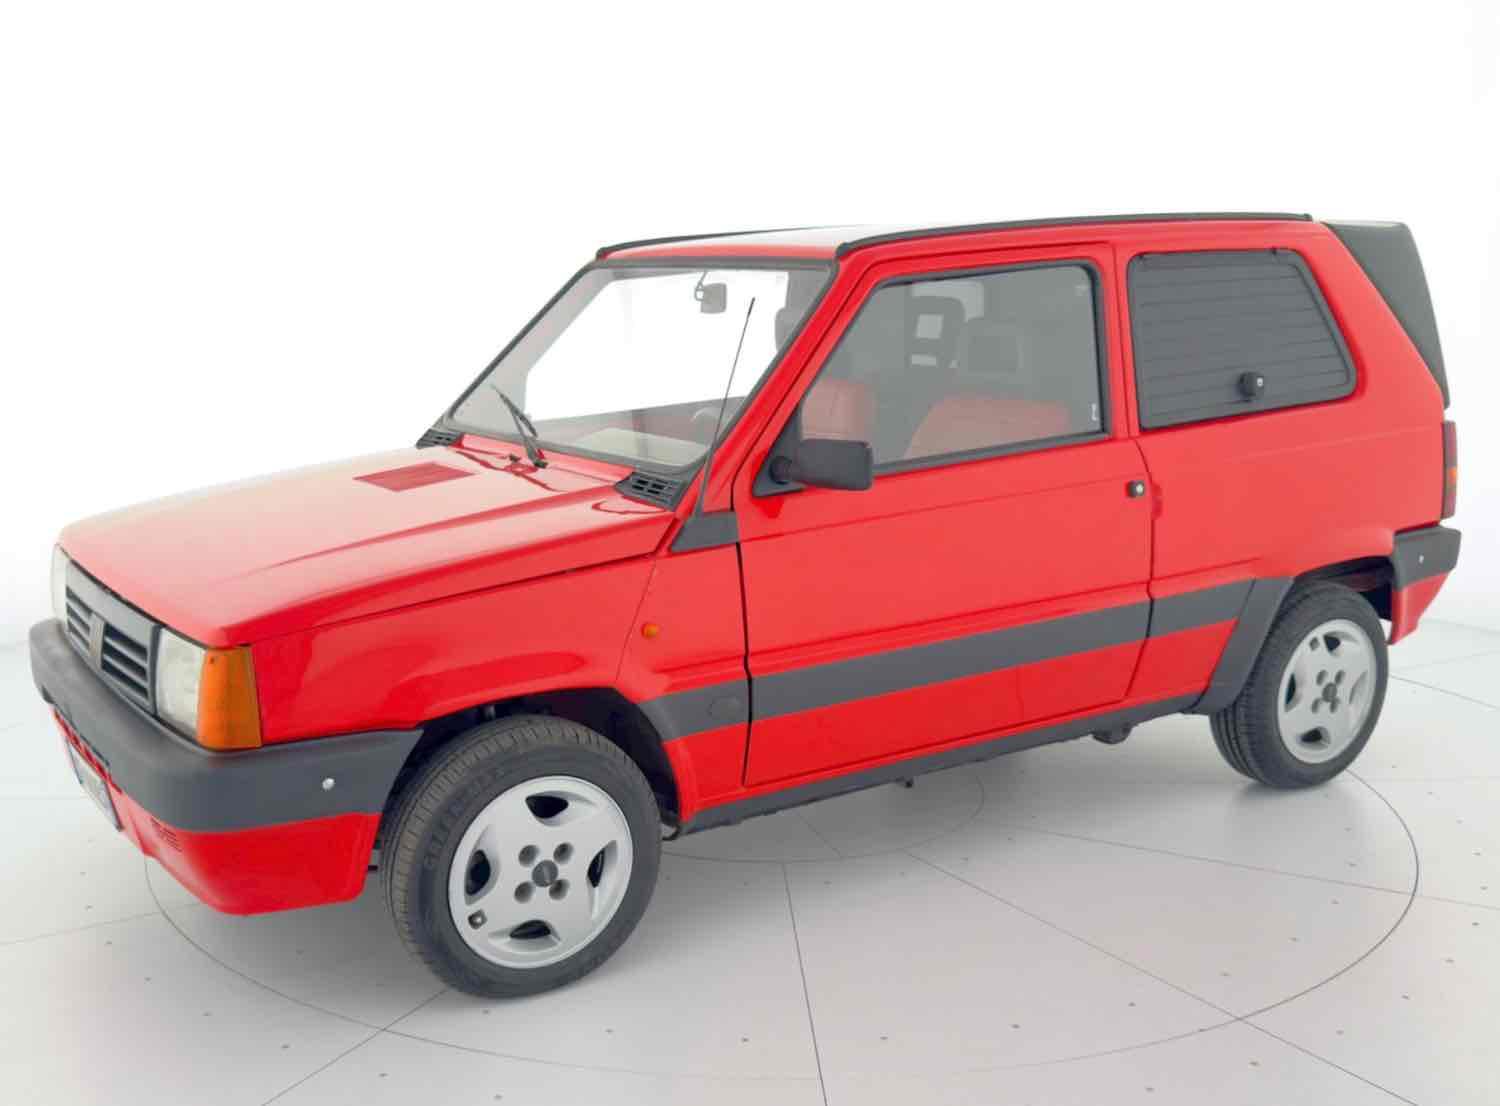 2003 - Fiat Panda Van 1.1 - NO RESERVE 